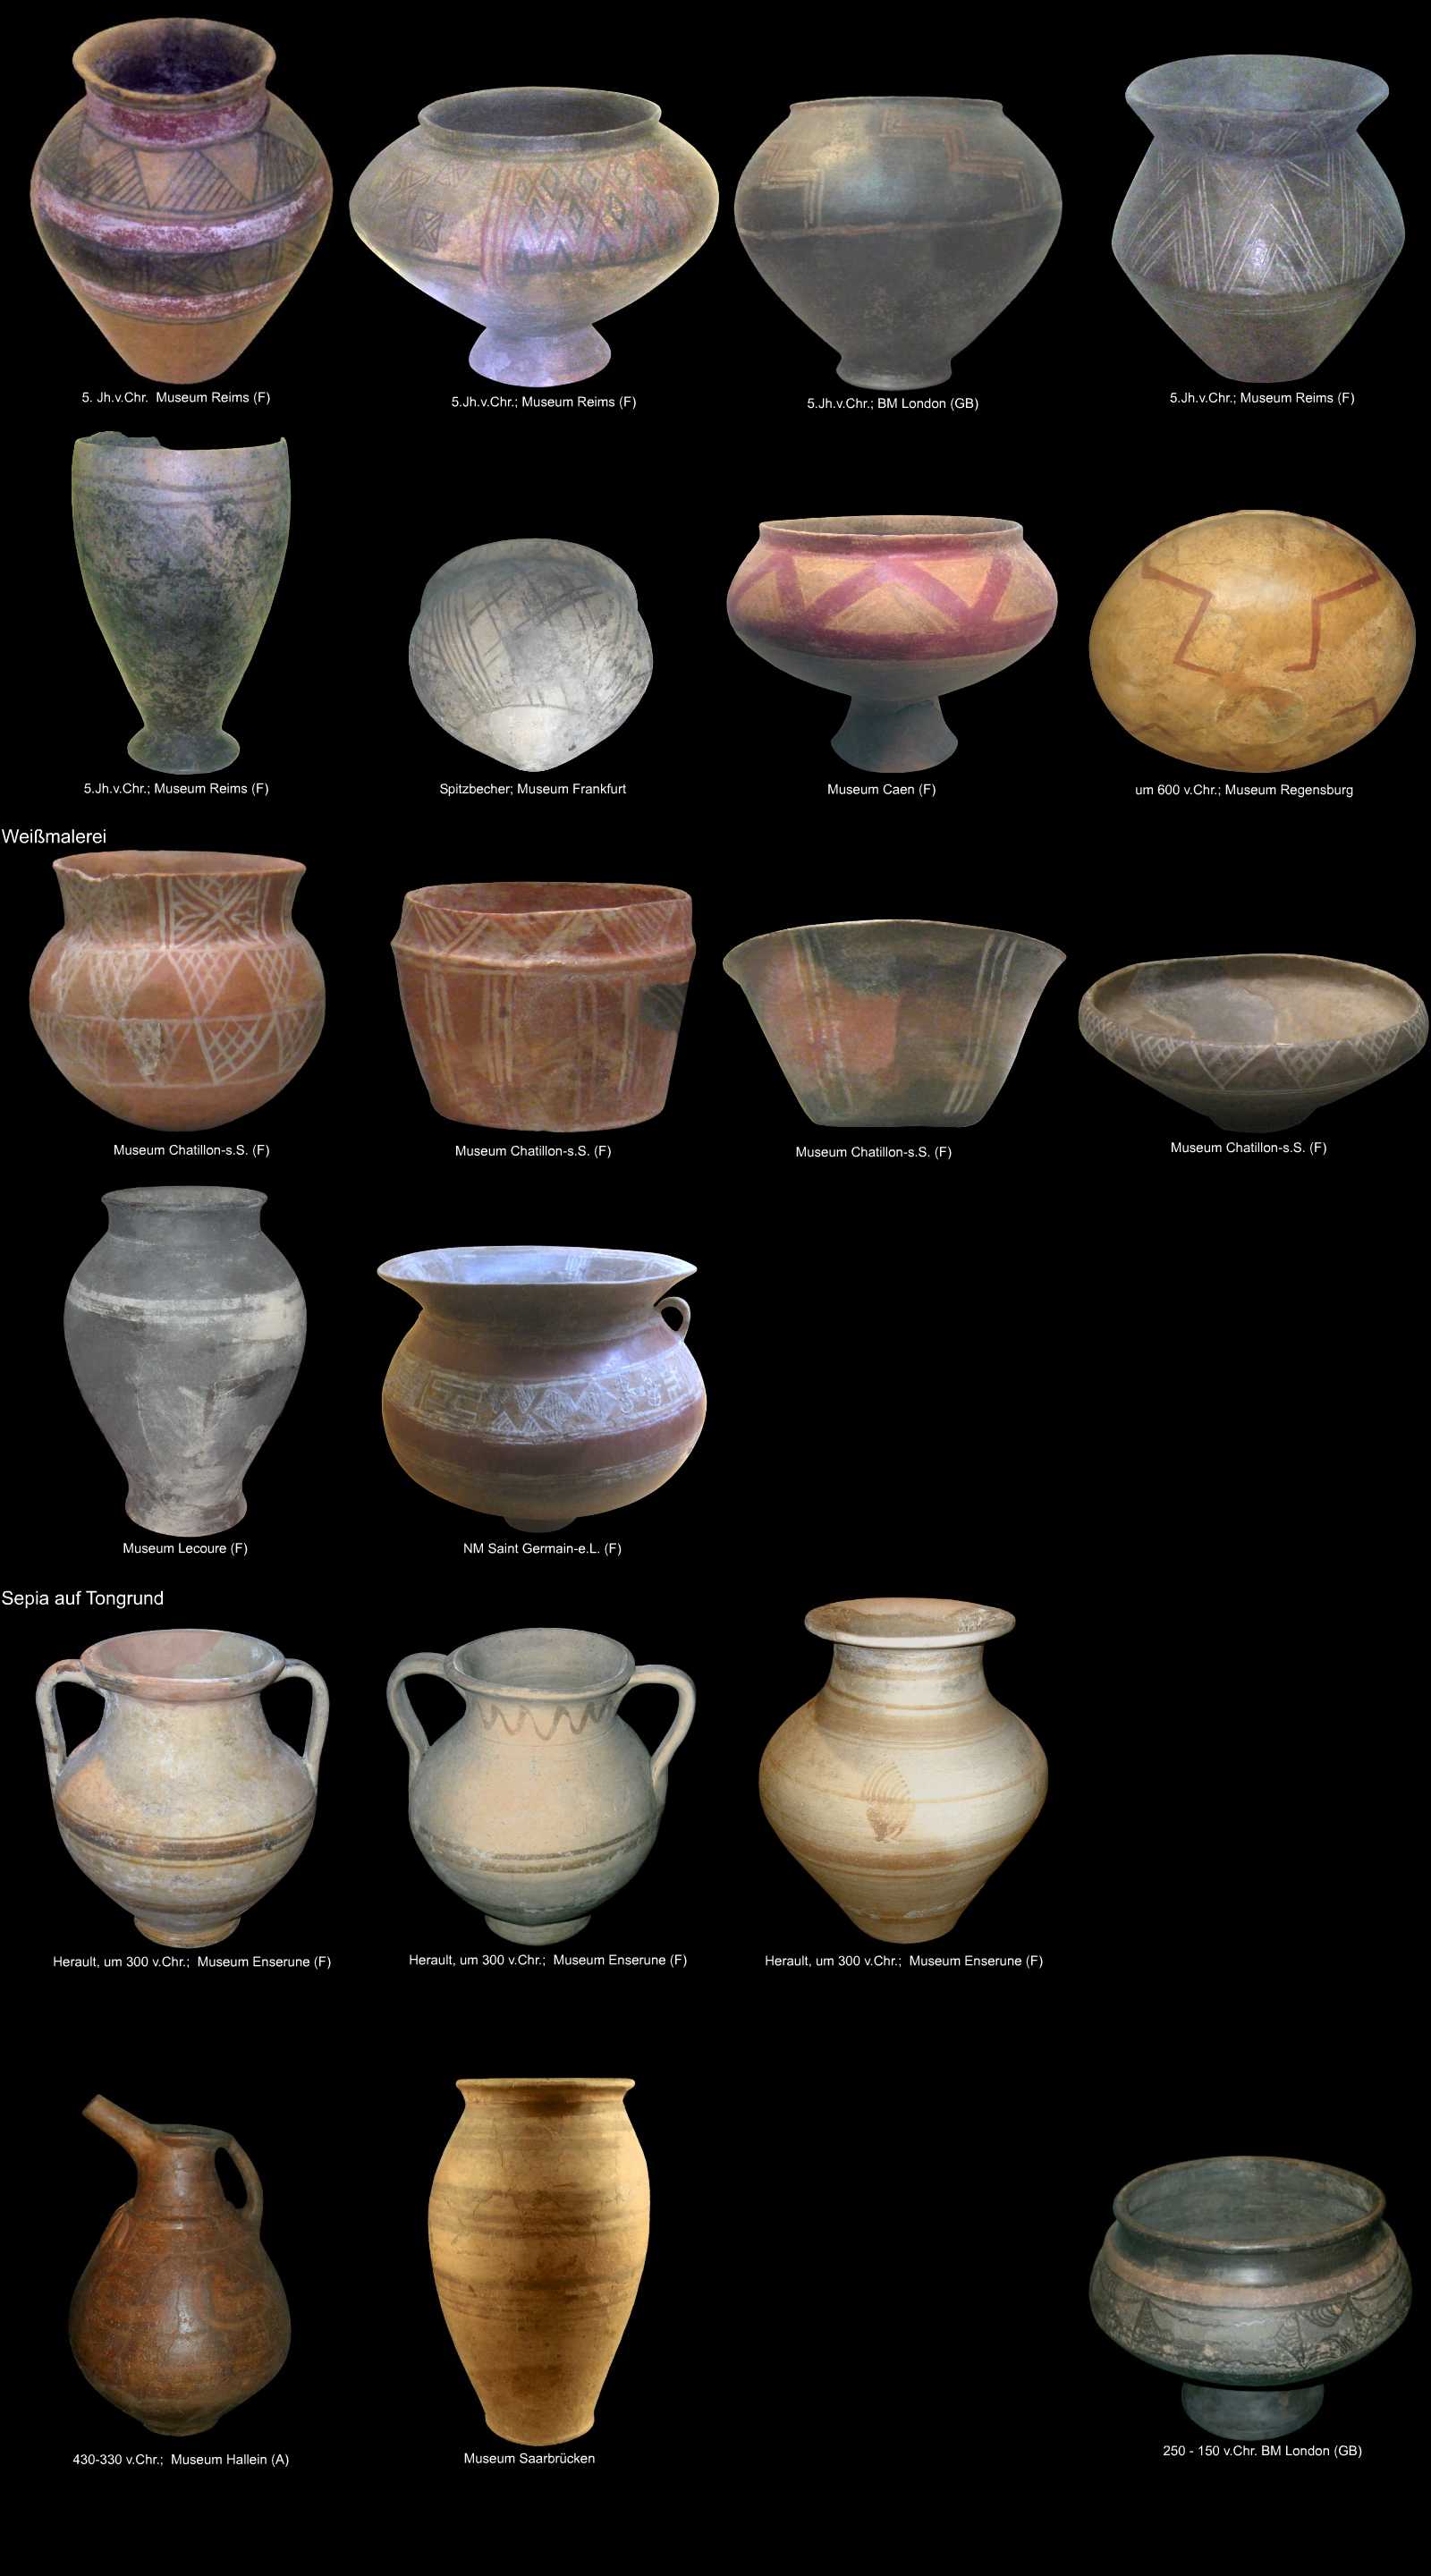 weitere Farbdekore auf keltischer Keramik